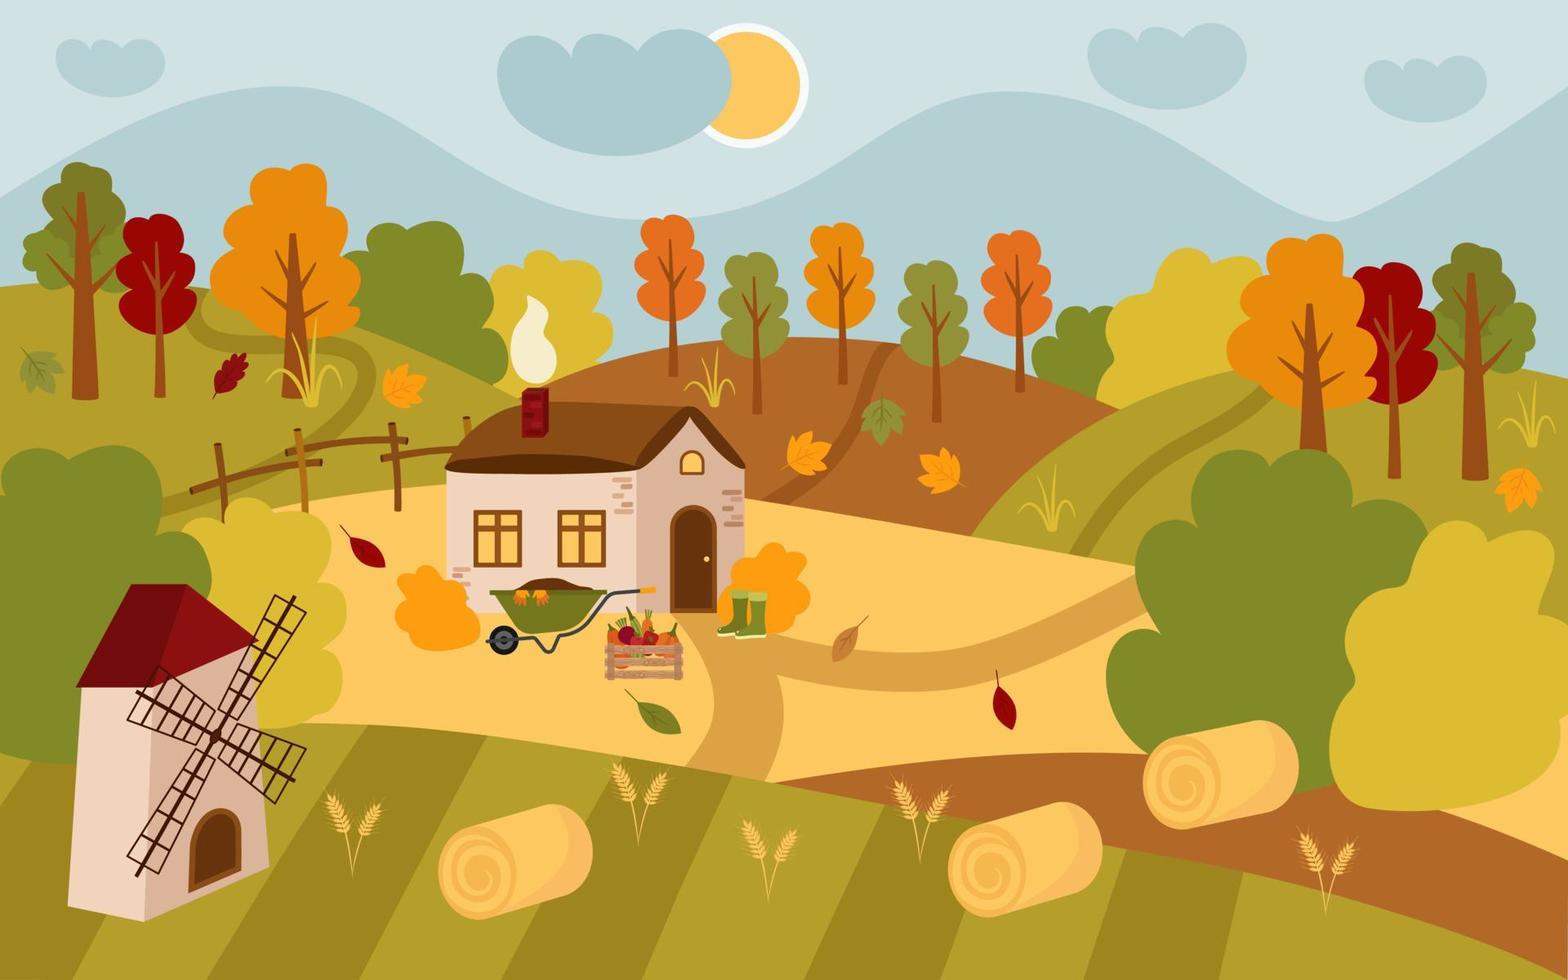 paesaggio vettoriale di una casa di villaggio autunnale. campagna accogliente, campi, prati, fieno, sole, nuvole, carriola da giardino, raccolta, foglie cadono. illustrazione del fumetto piatto.